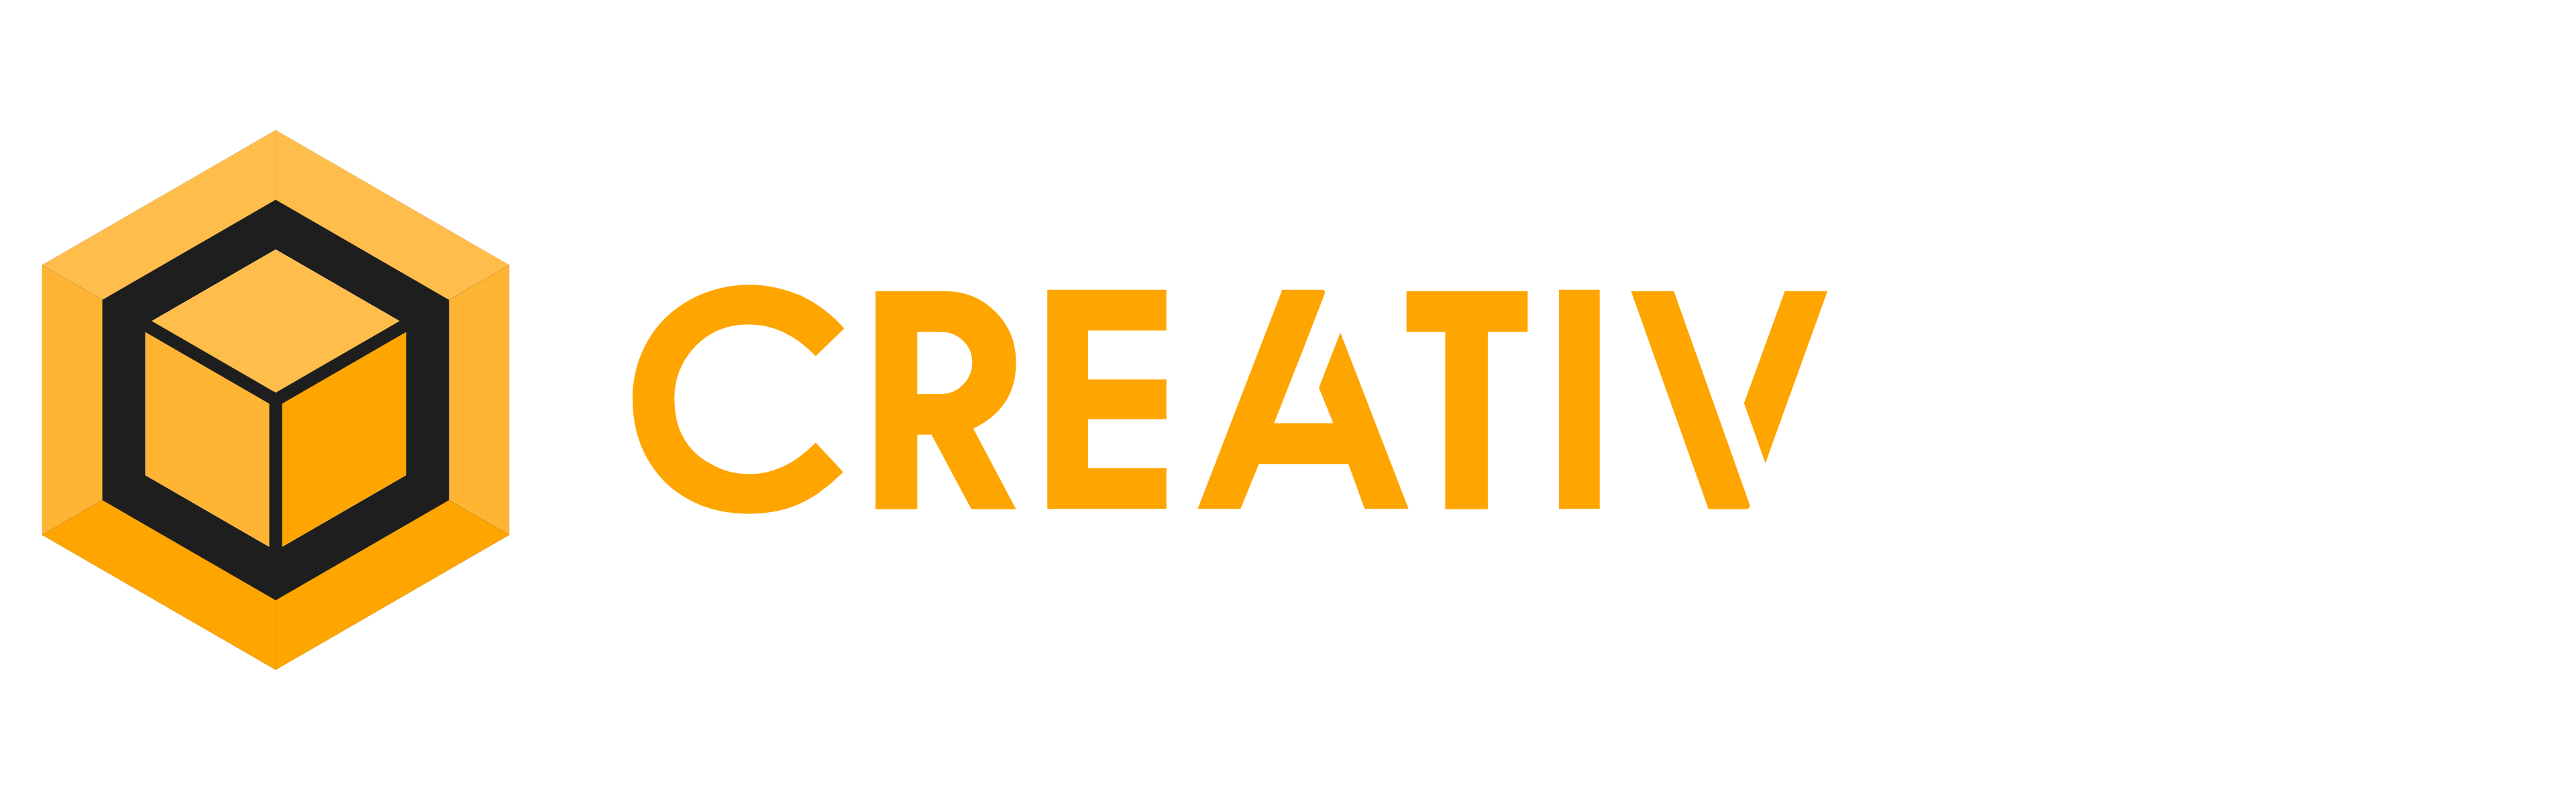 CreativCube Videoproduktion Logo